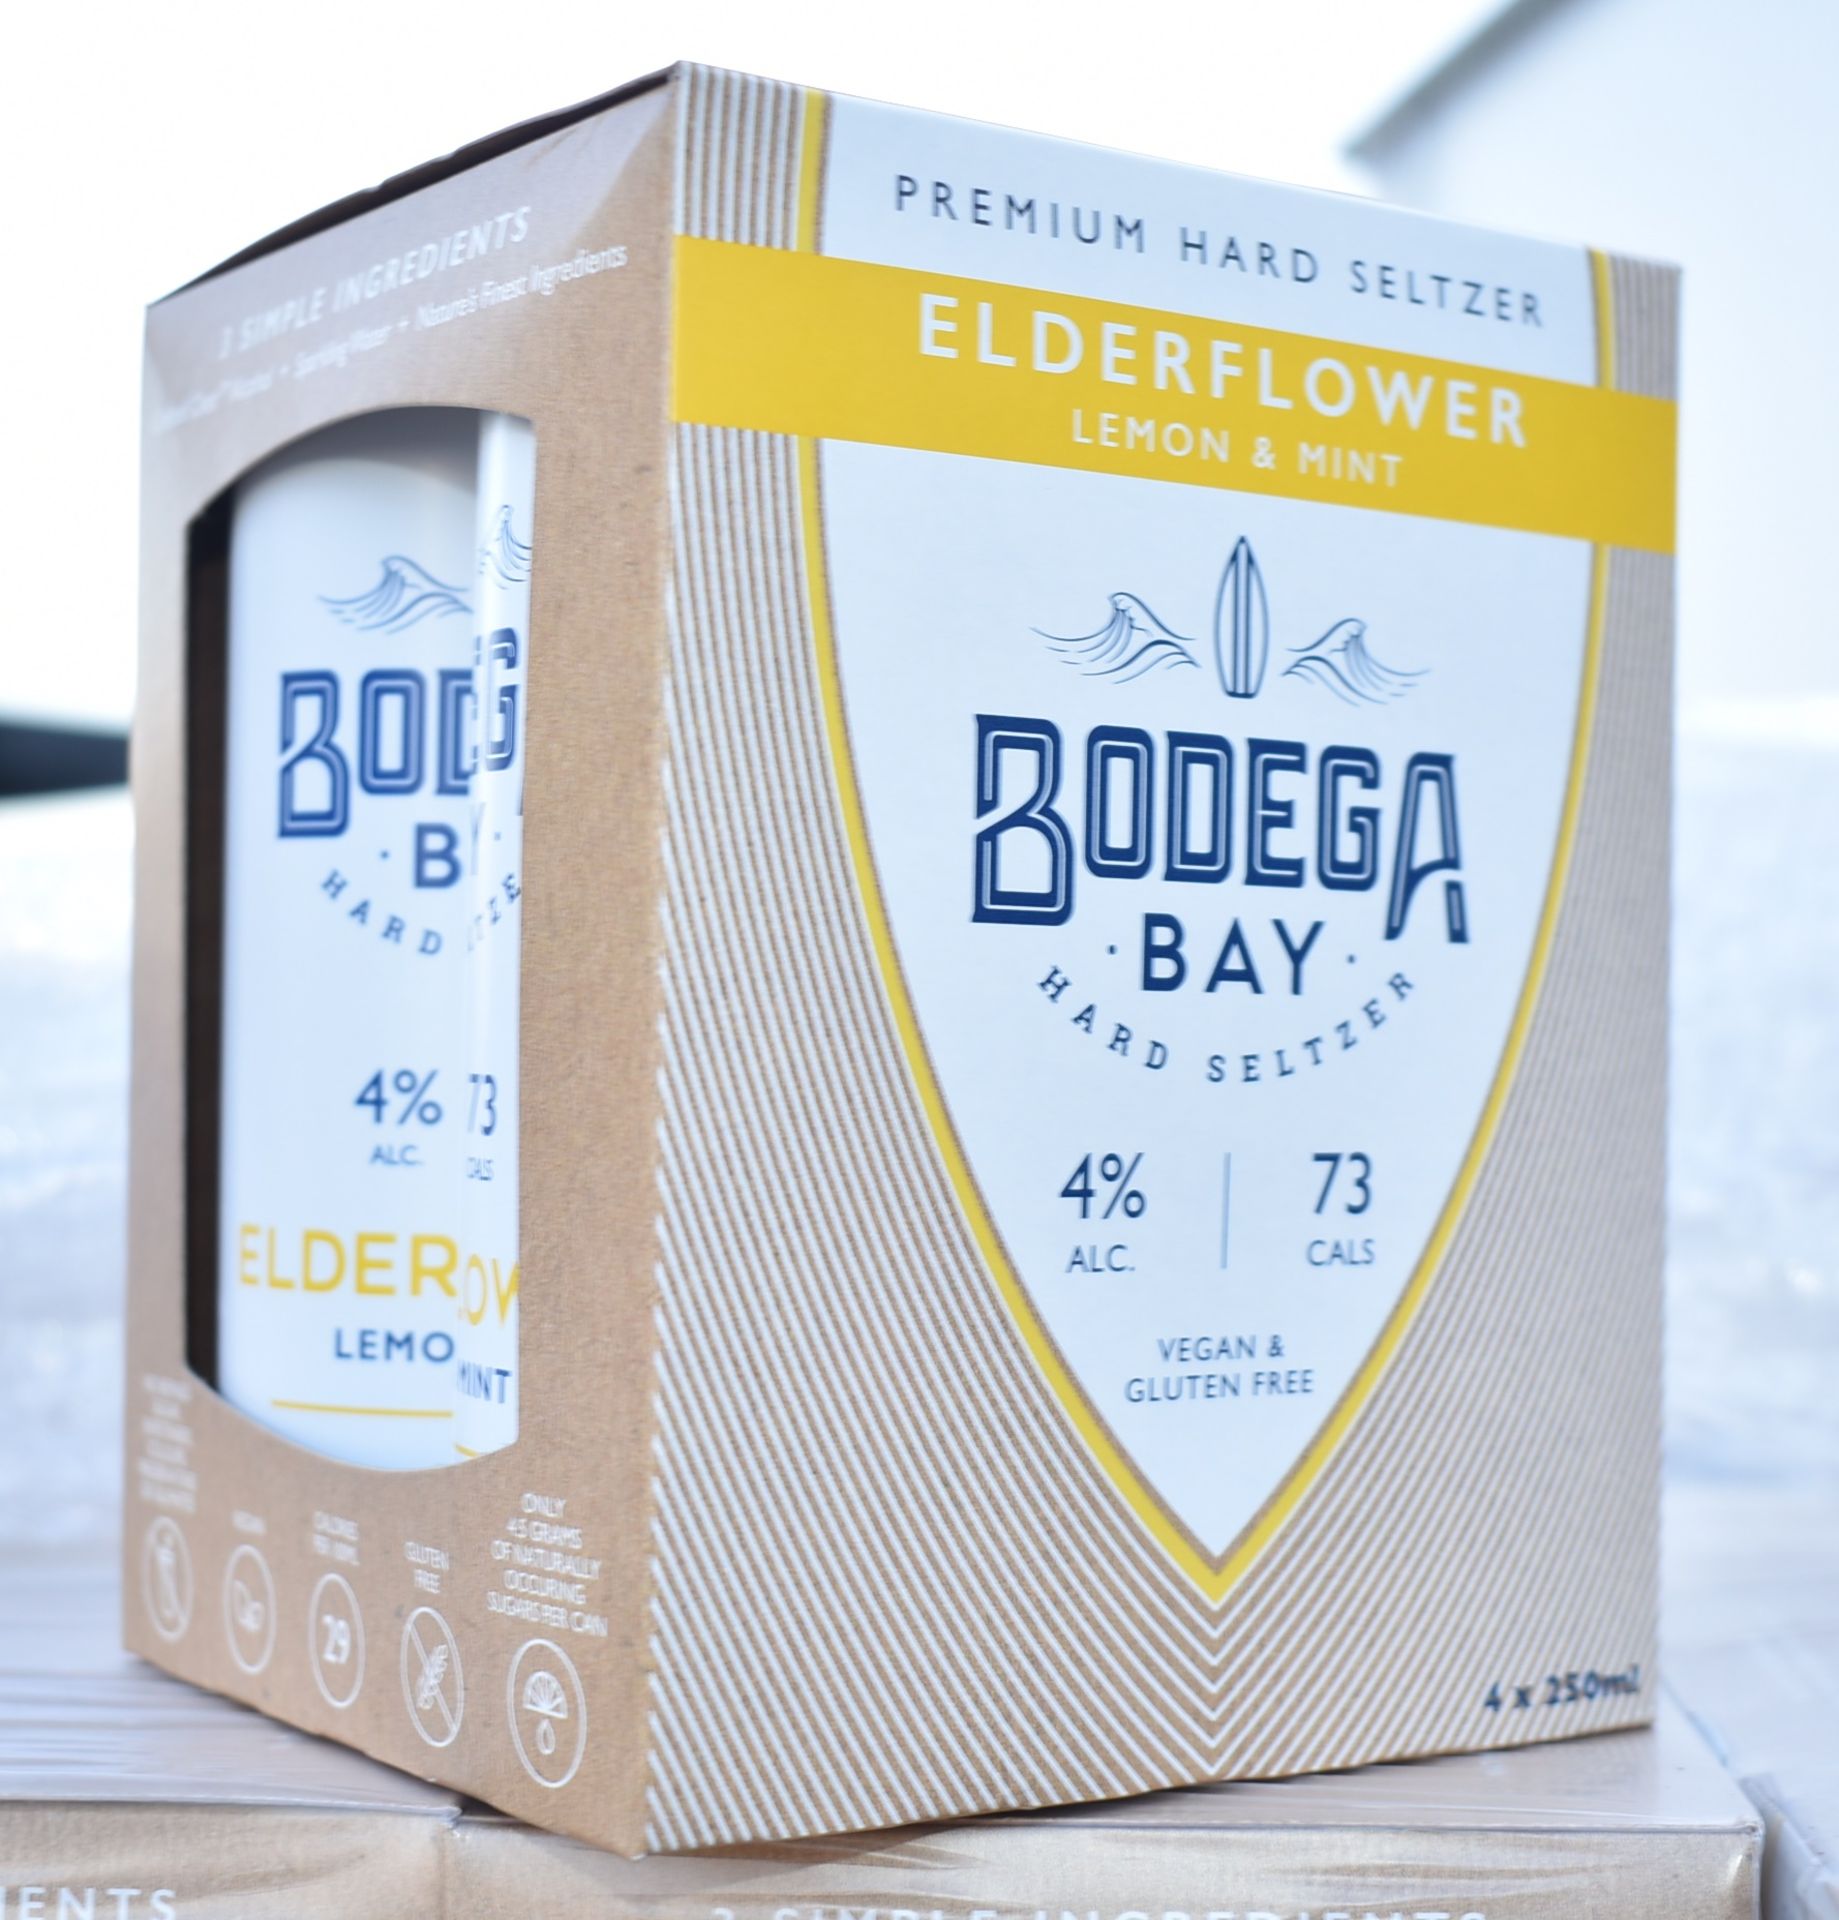 24 x Bodega Bay Hard Seltzer 250ml Alcoholic Sparkling Water Drinks - Elderflower Lemon & Mint - - Image 9 of 9